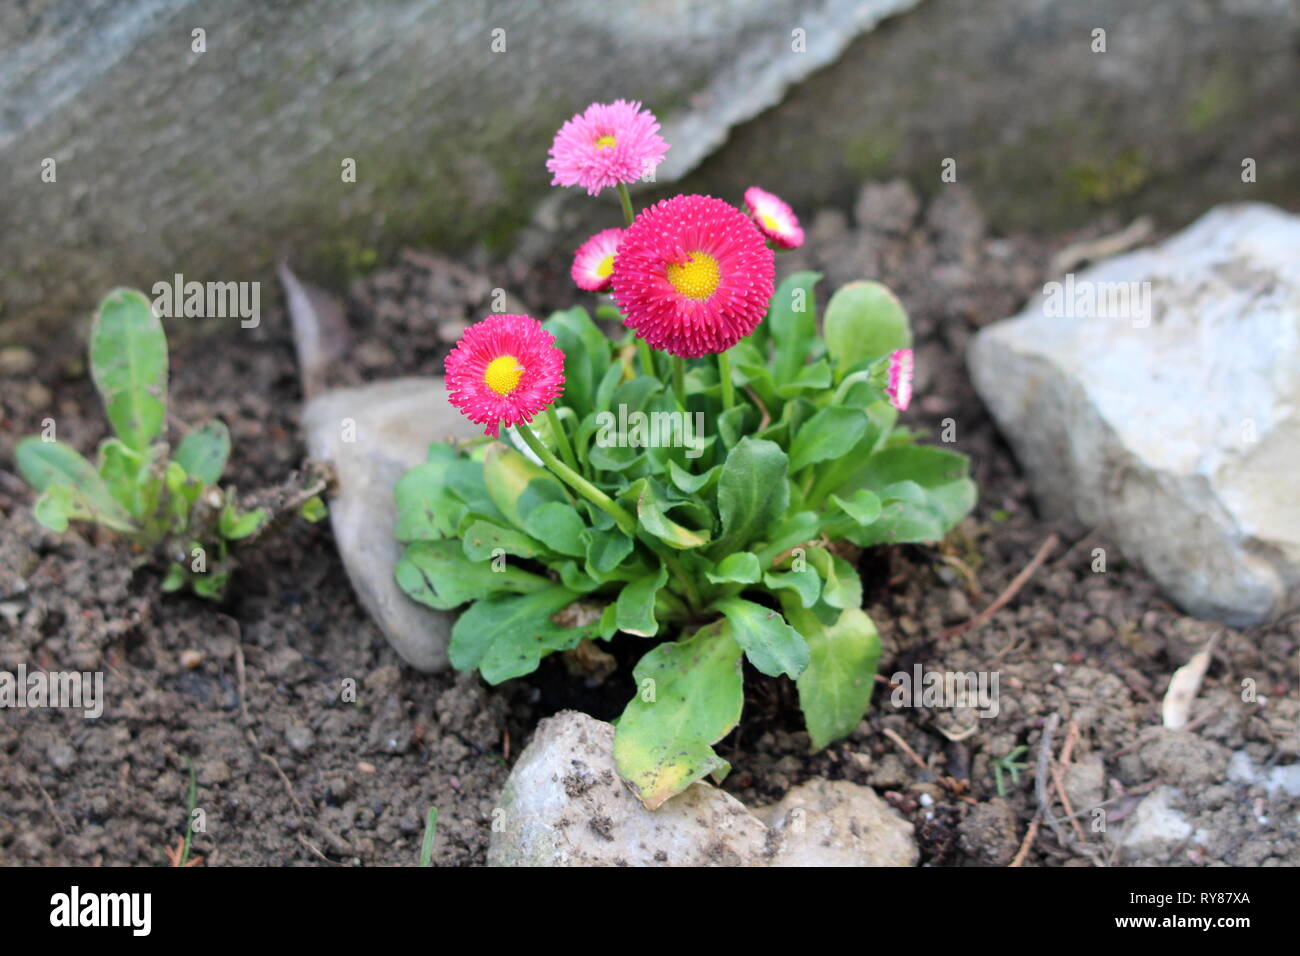 Kleine Bündel von gemeinsamen Daisy oder Bellis perennis oder Englisch  daisy oder Wiese oder Rasen daisy Daisy krautige Pflanzen mit rosa und rote  Blumen Stockfotografie - Alamy